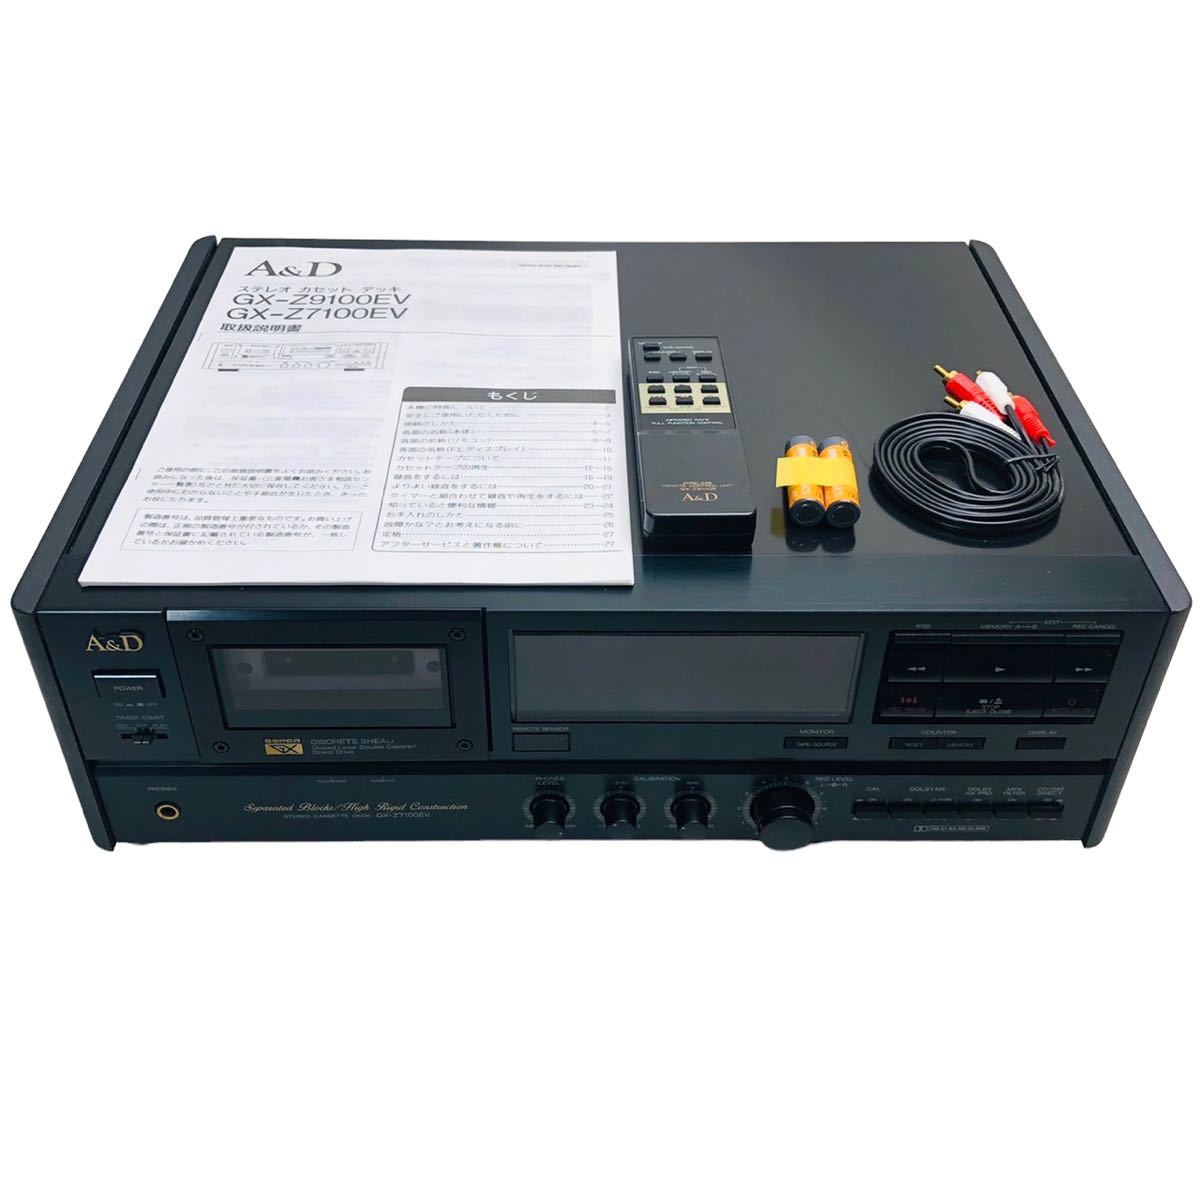 売上実績NO.1 A&D GX-Z7100EV 3ヘッド カセットデッキ 一般